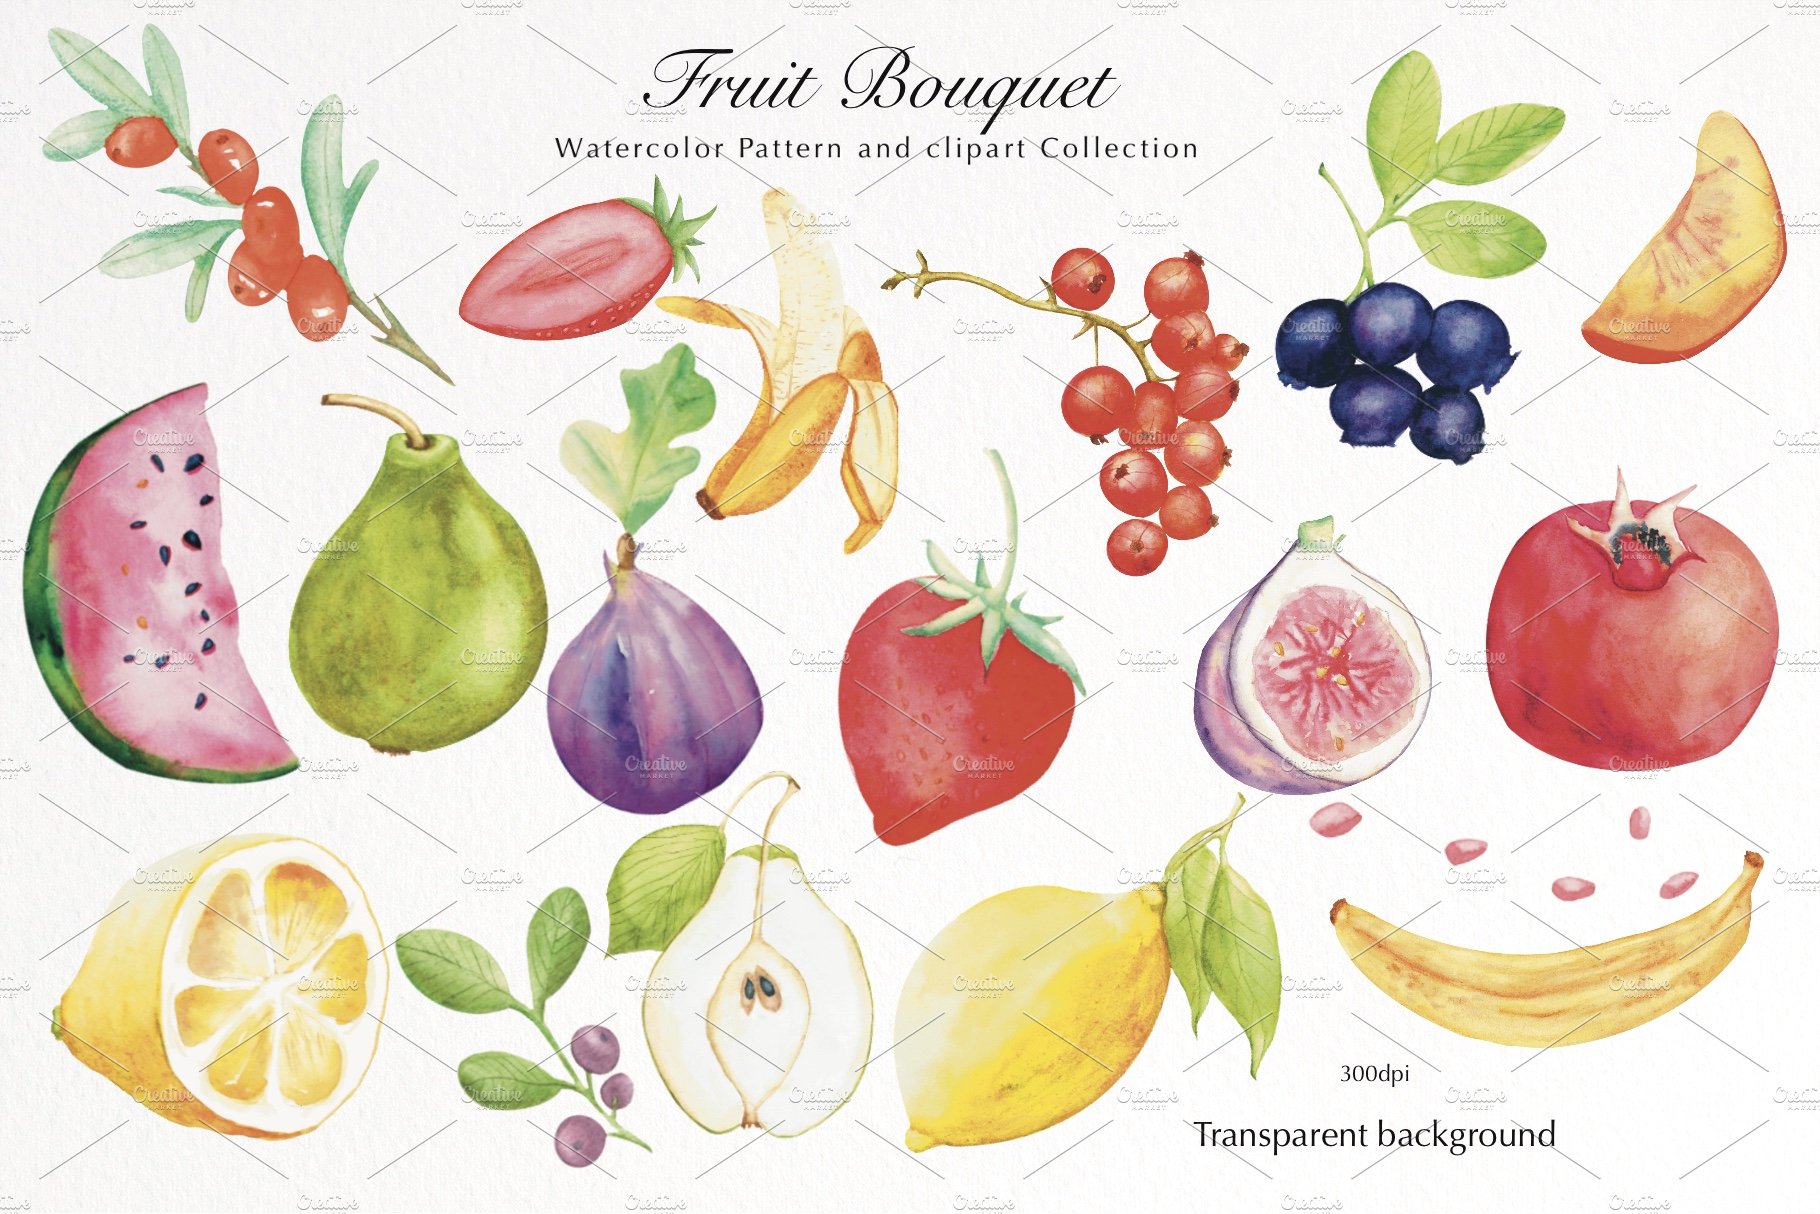 Watercolor fruit bouquet preview image.